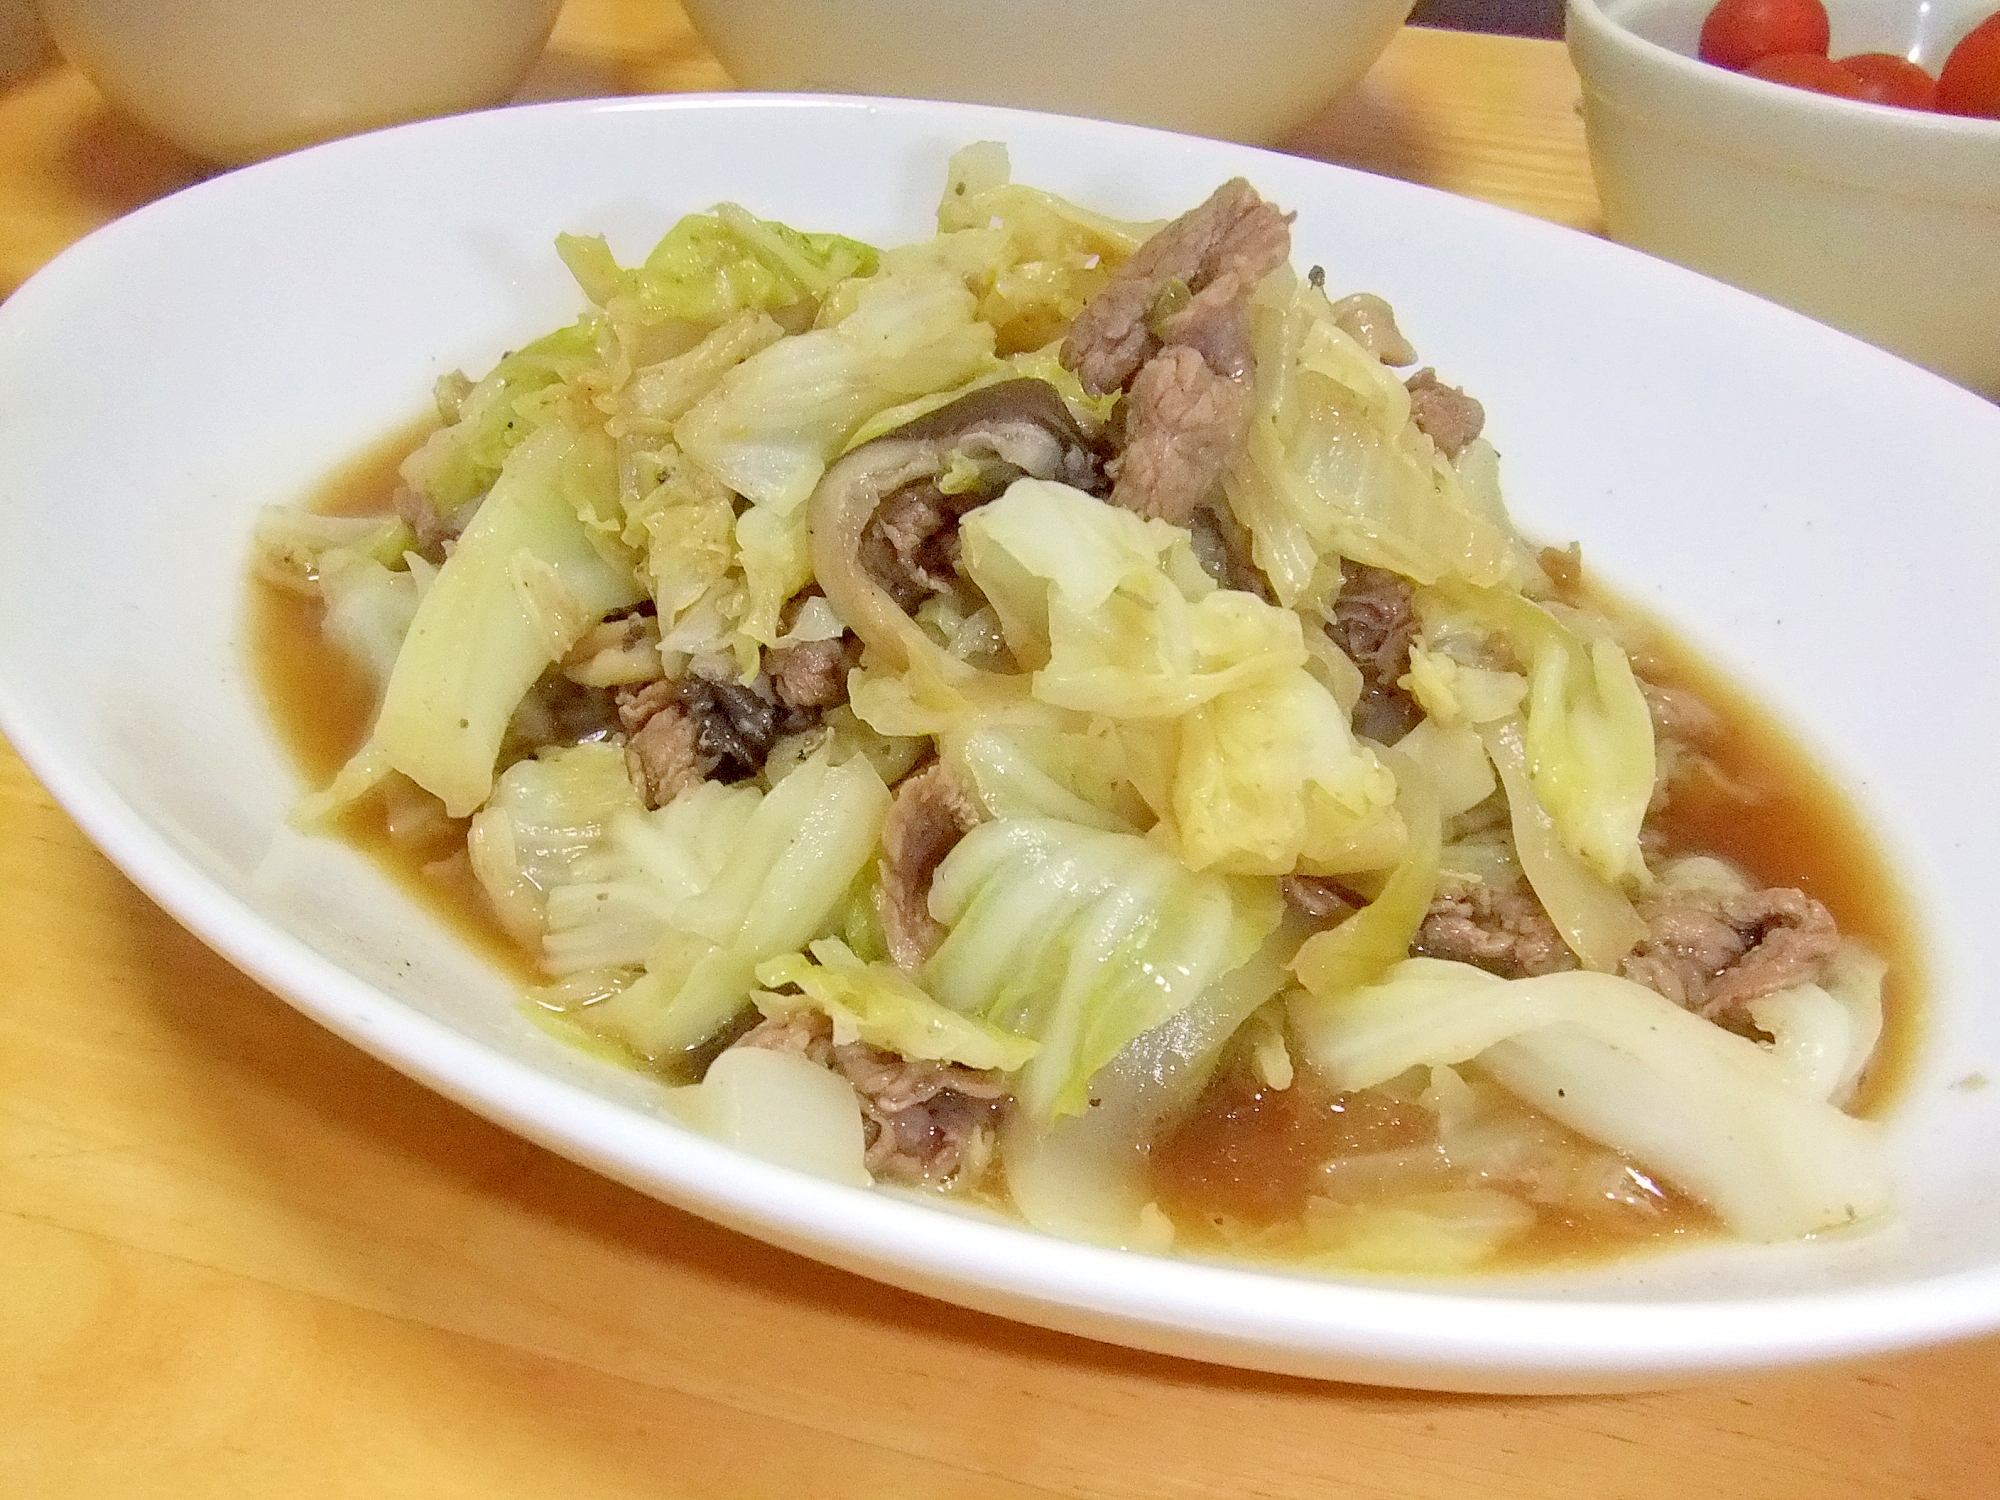 キャベツ・牛肉・椎茸の炒め物